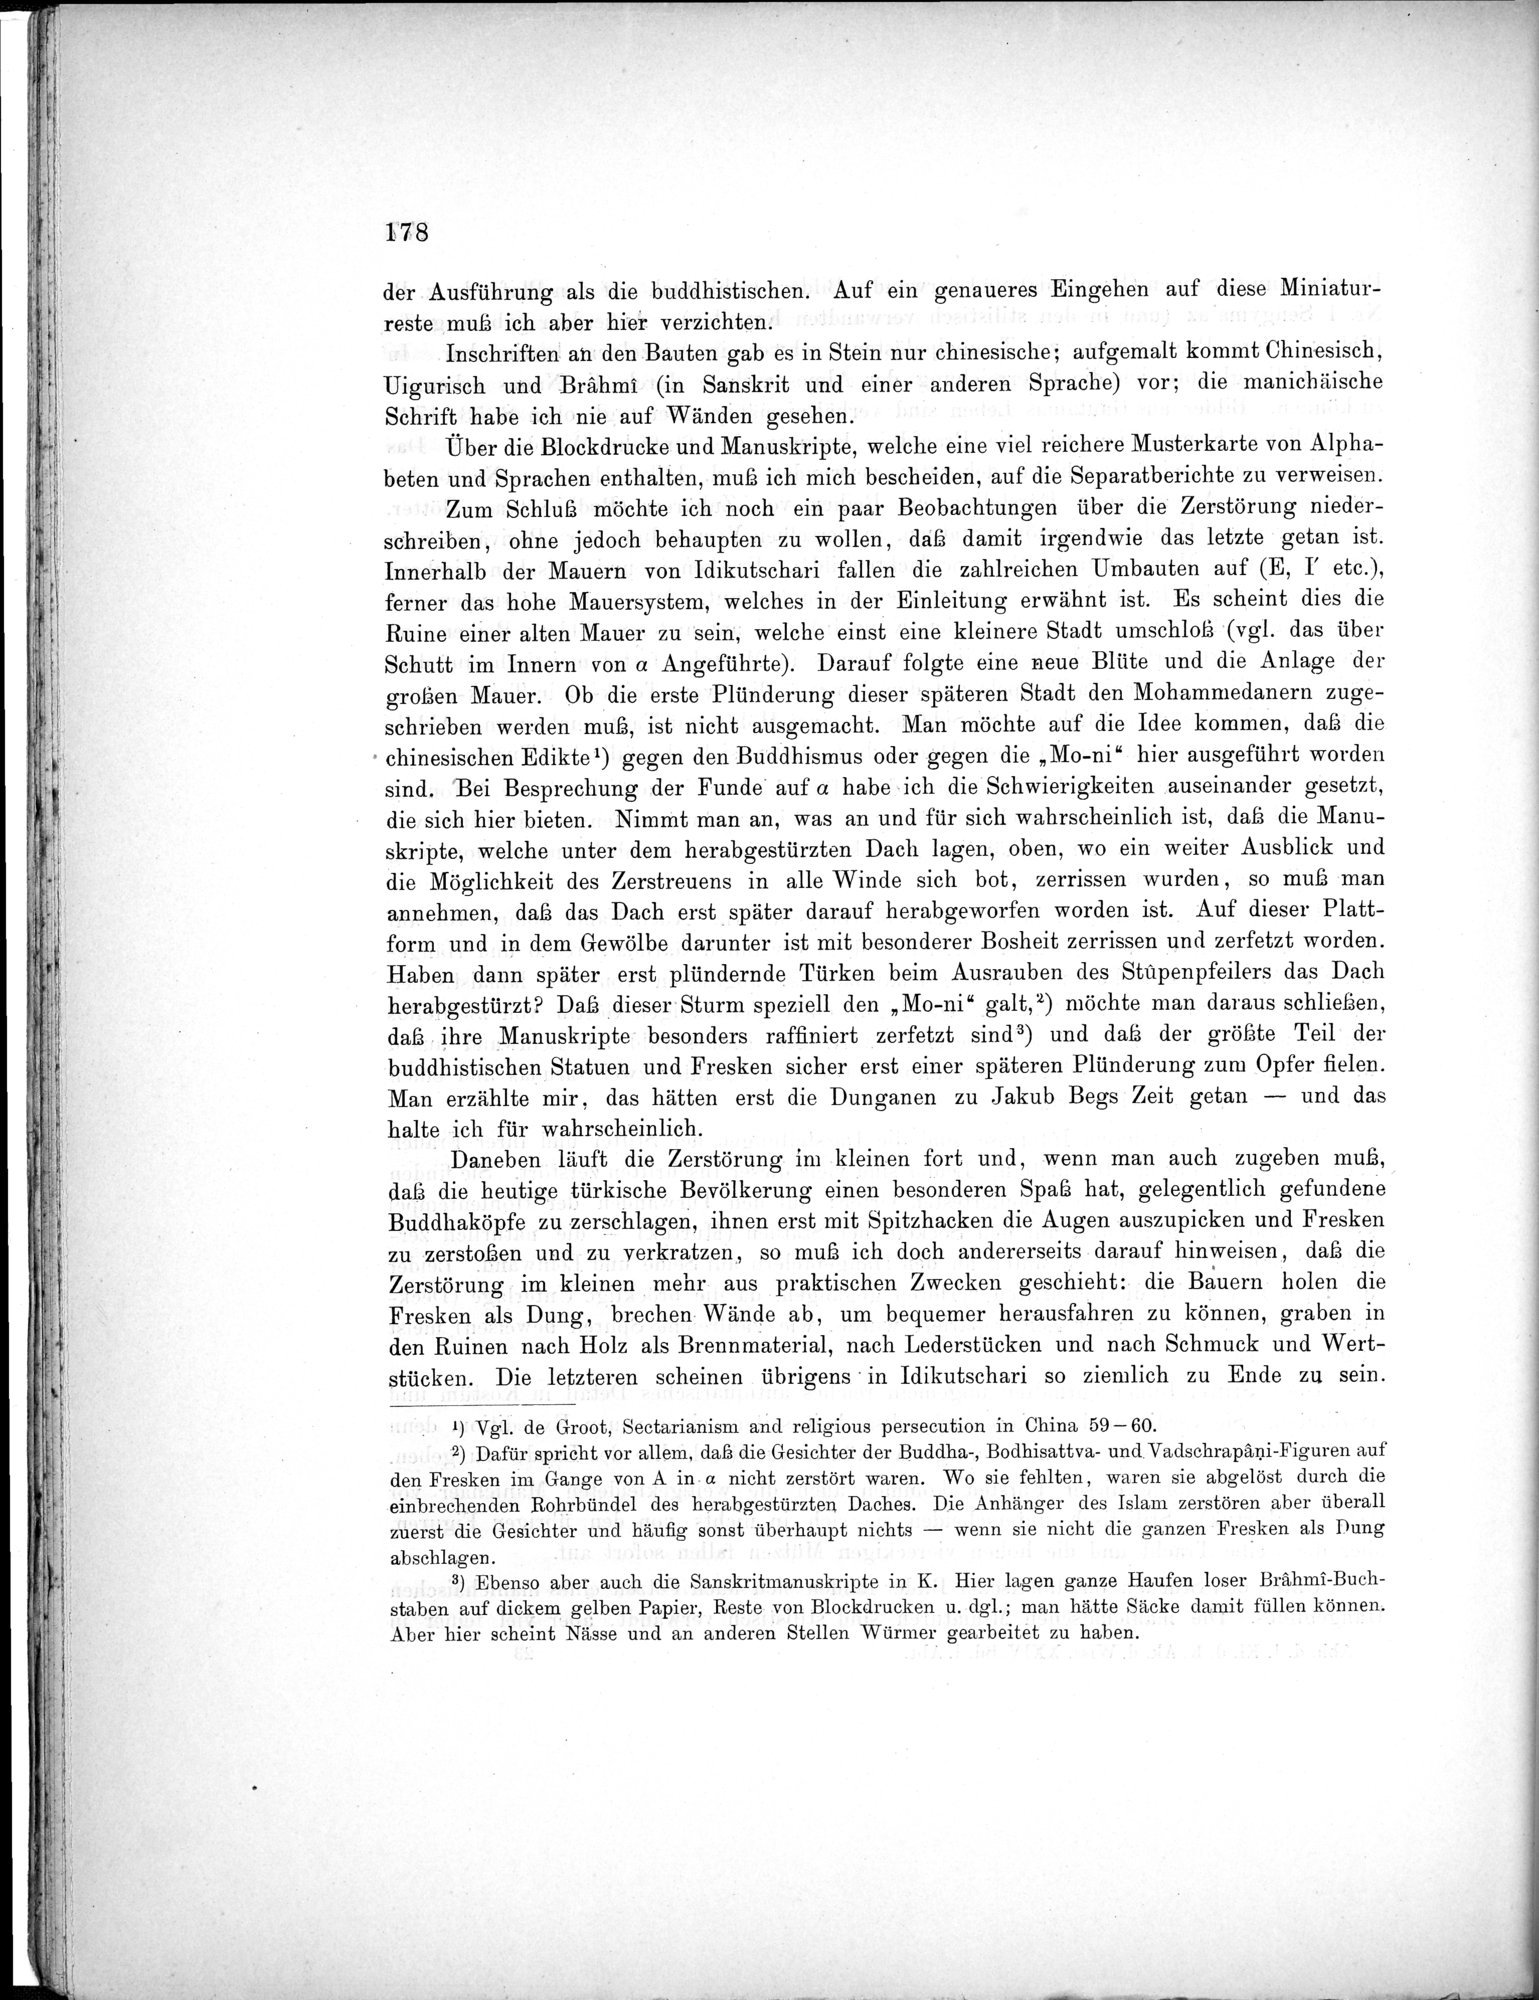 Bericht über archäologische Arbeiten in Idikutschari und Umgebung im Winter 1902-1903 : vol.1 / Page 188 (Grayscale High Resolution Image)